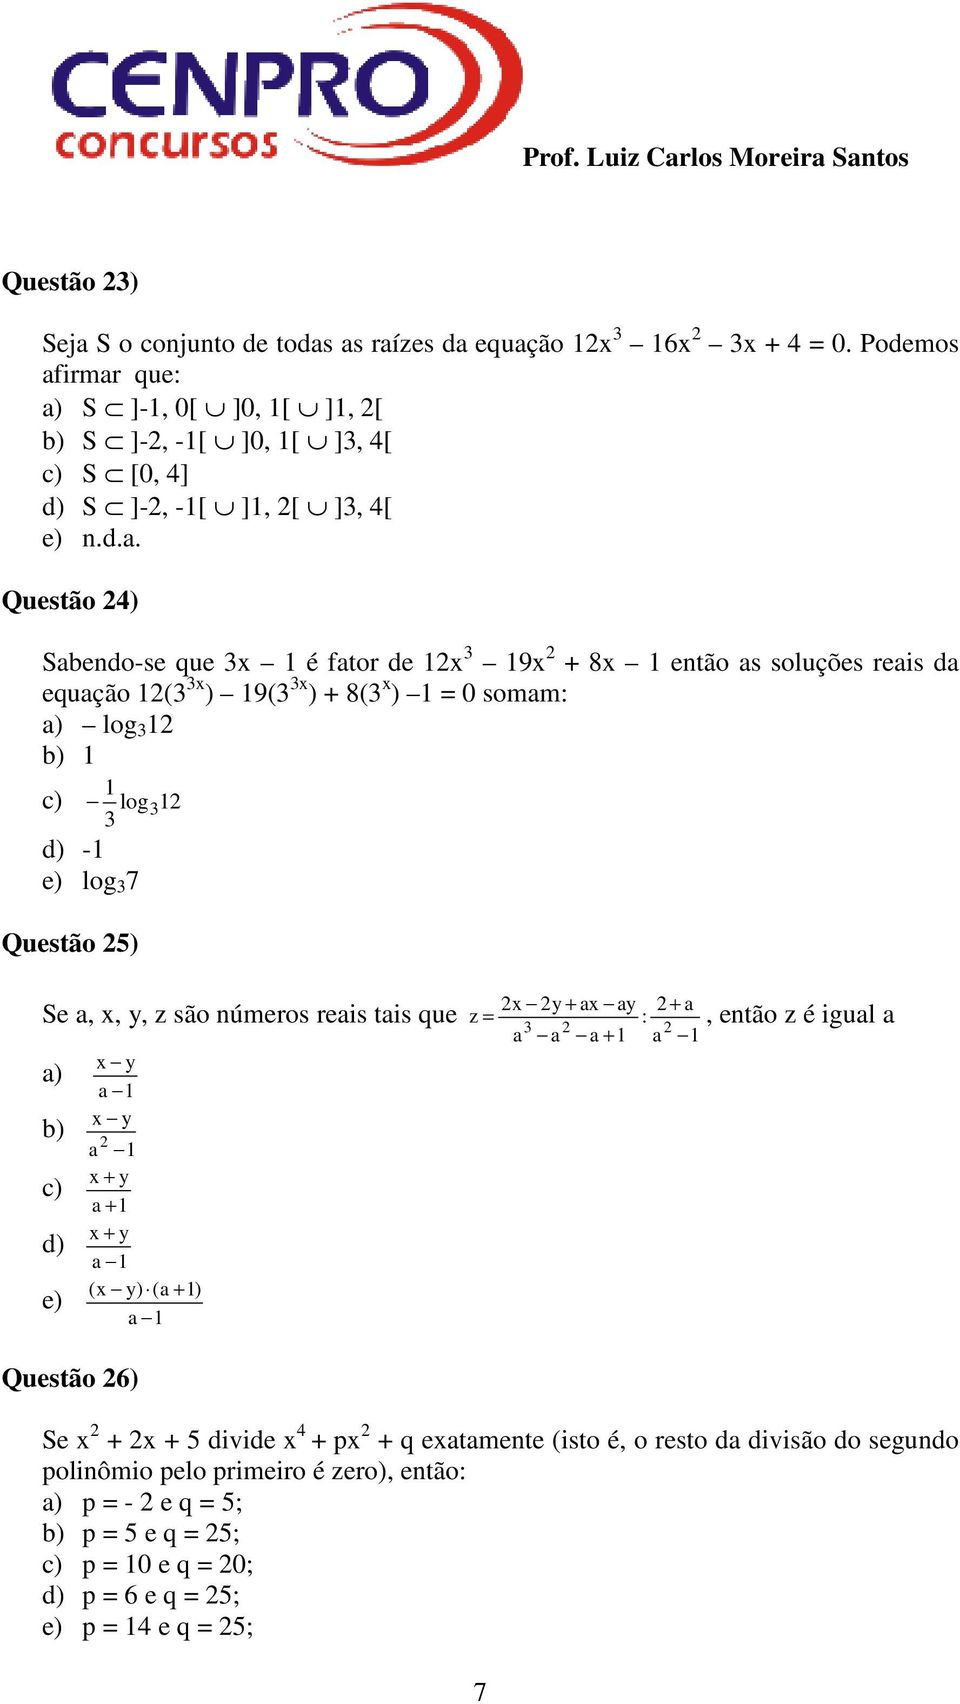 irmar que: a) S ]-1, 0[ ]0, 1[ ]1, 2[ b) S ]-2, -1[ ]0, 1[ ]3, 4[ c) S [0, 4] d) S ]-2, -1[ ]1, 2[ ]3, 4[ e) n.d.a. Questão 24) Sabendo-se que 3x 1 é fator de 12x 3 19x 2 + 8x 1 então as soluções